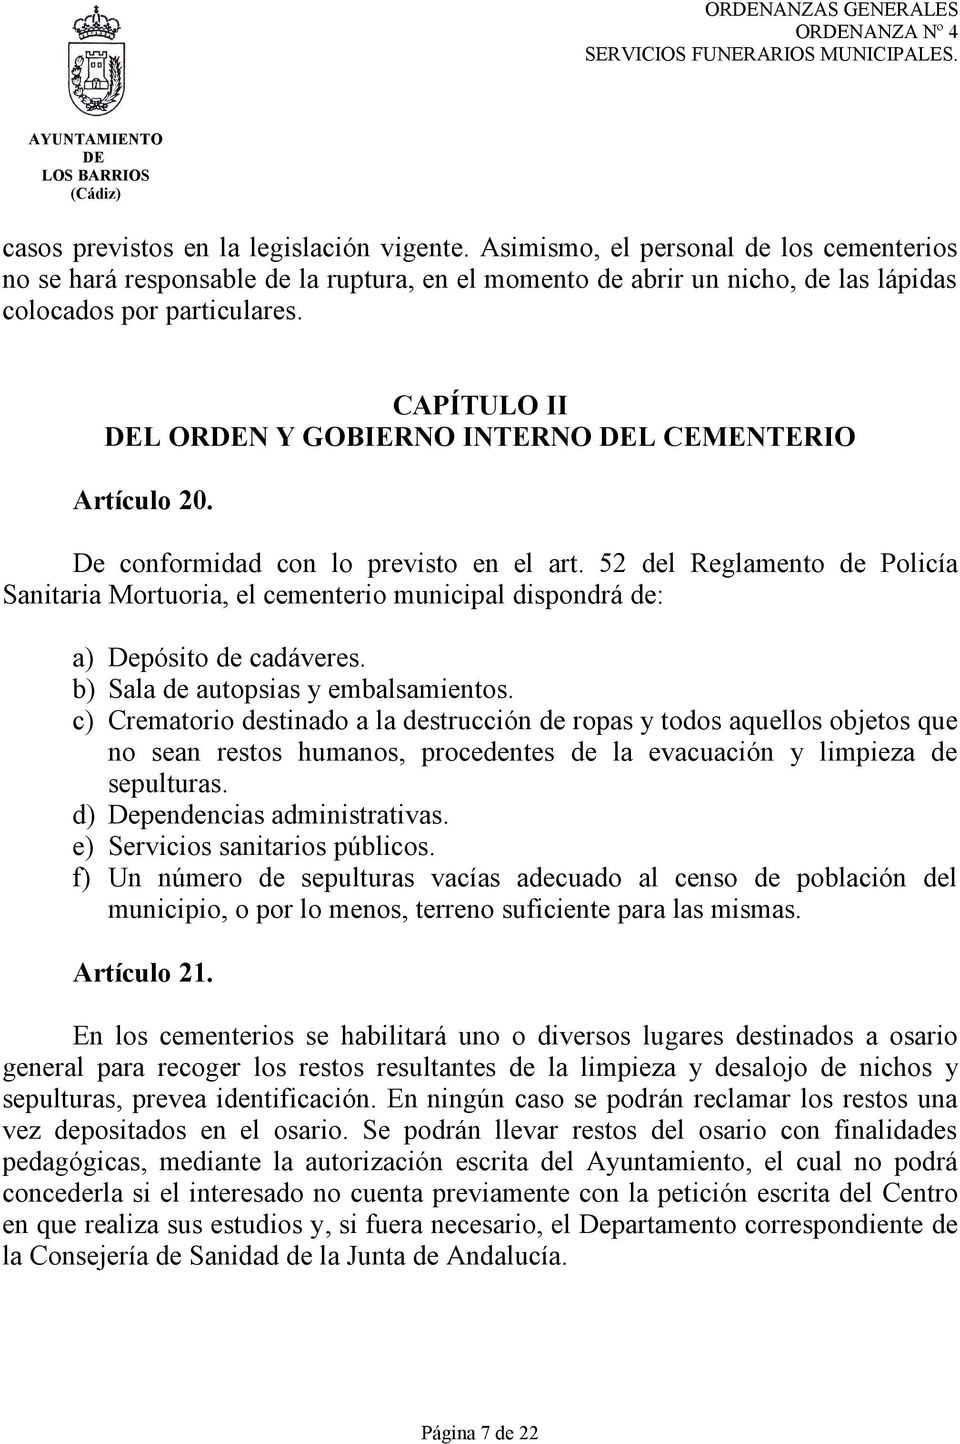 CAPÍTULO II L ORN Y GOBIERNO INTERNO L CEMENTERIO Artículo 20. De conformidad con lo previsto en el art.